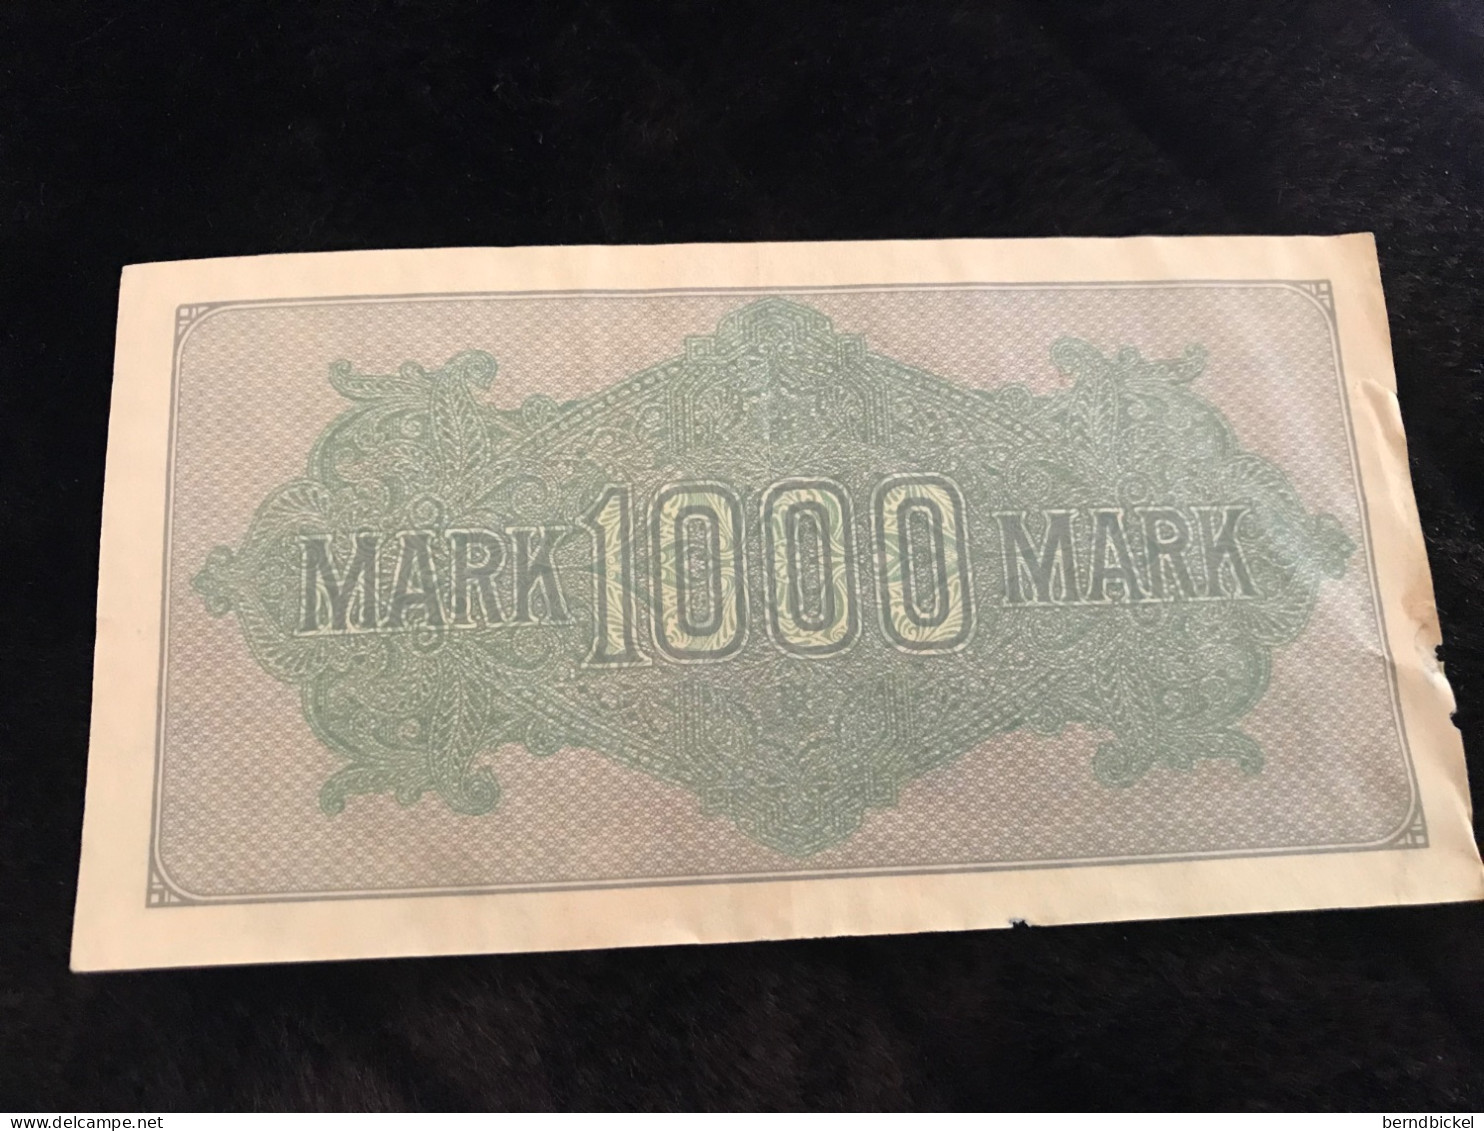 Geldschein Banknote Deutsches Reich 1000 Mark 1922 - 1000 Mark